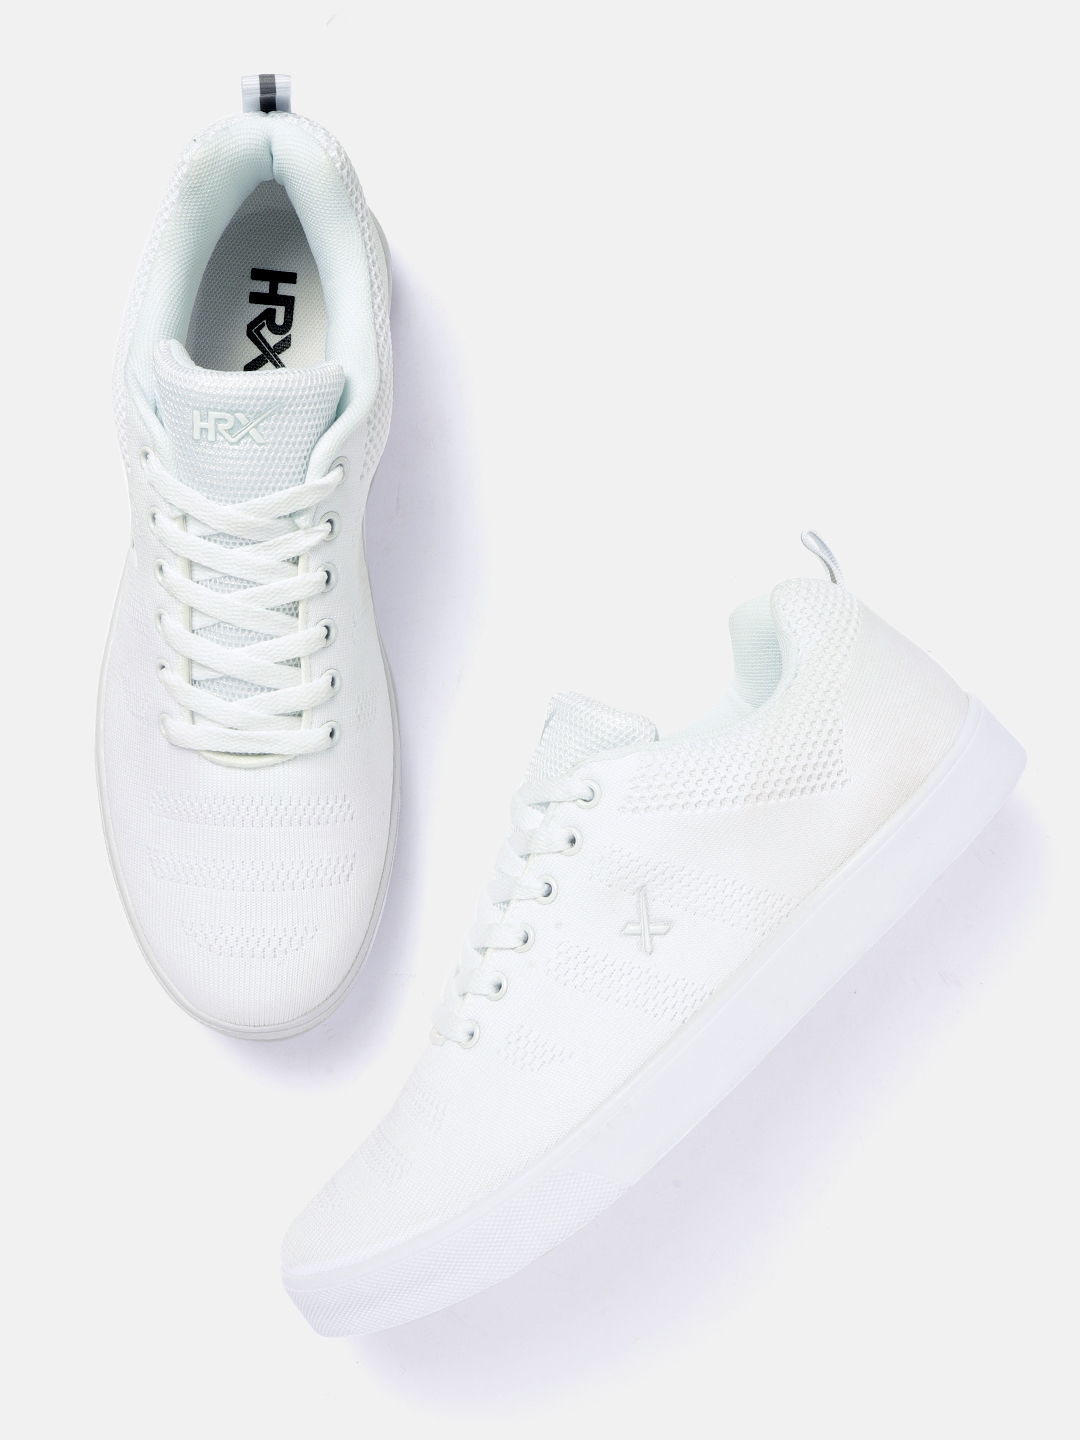 hrx white sneakers